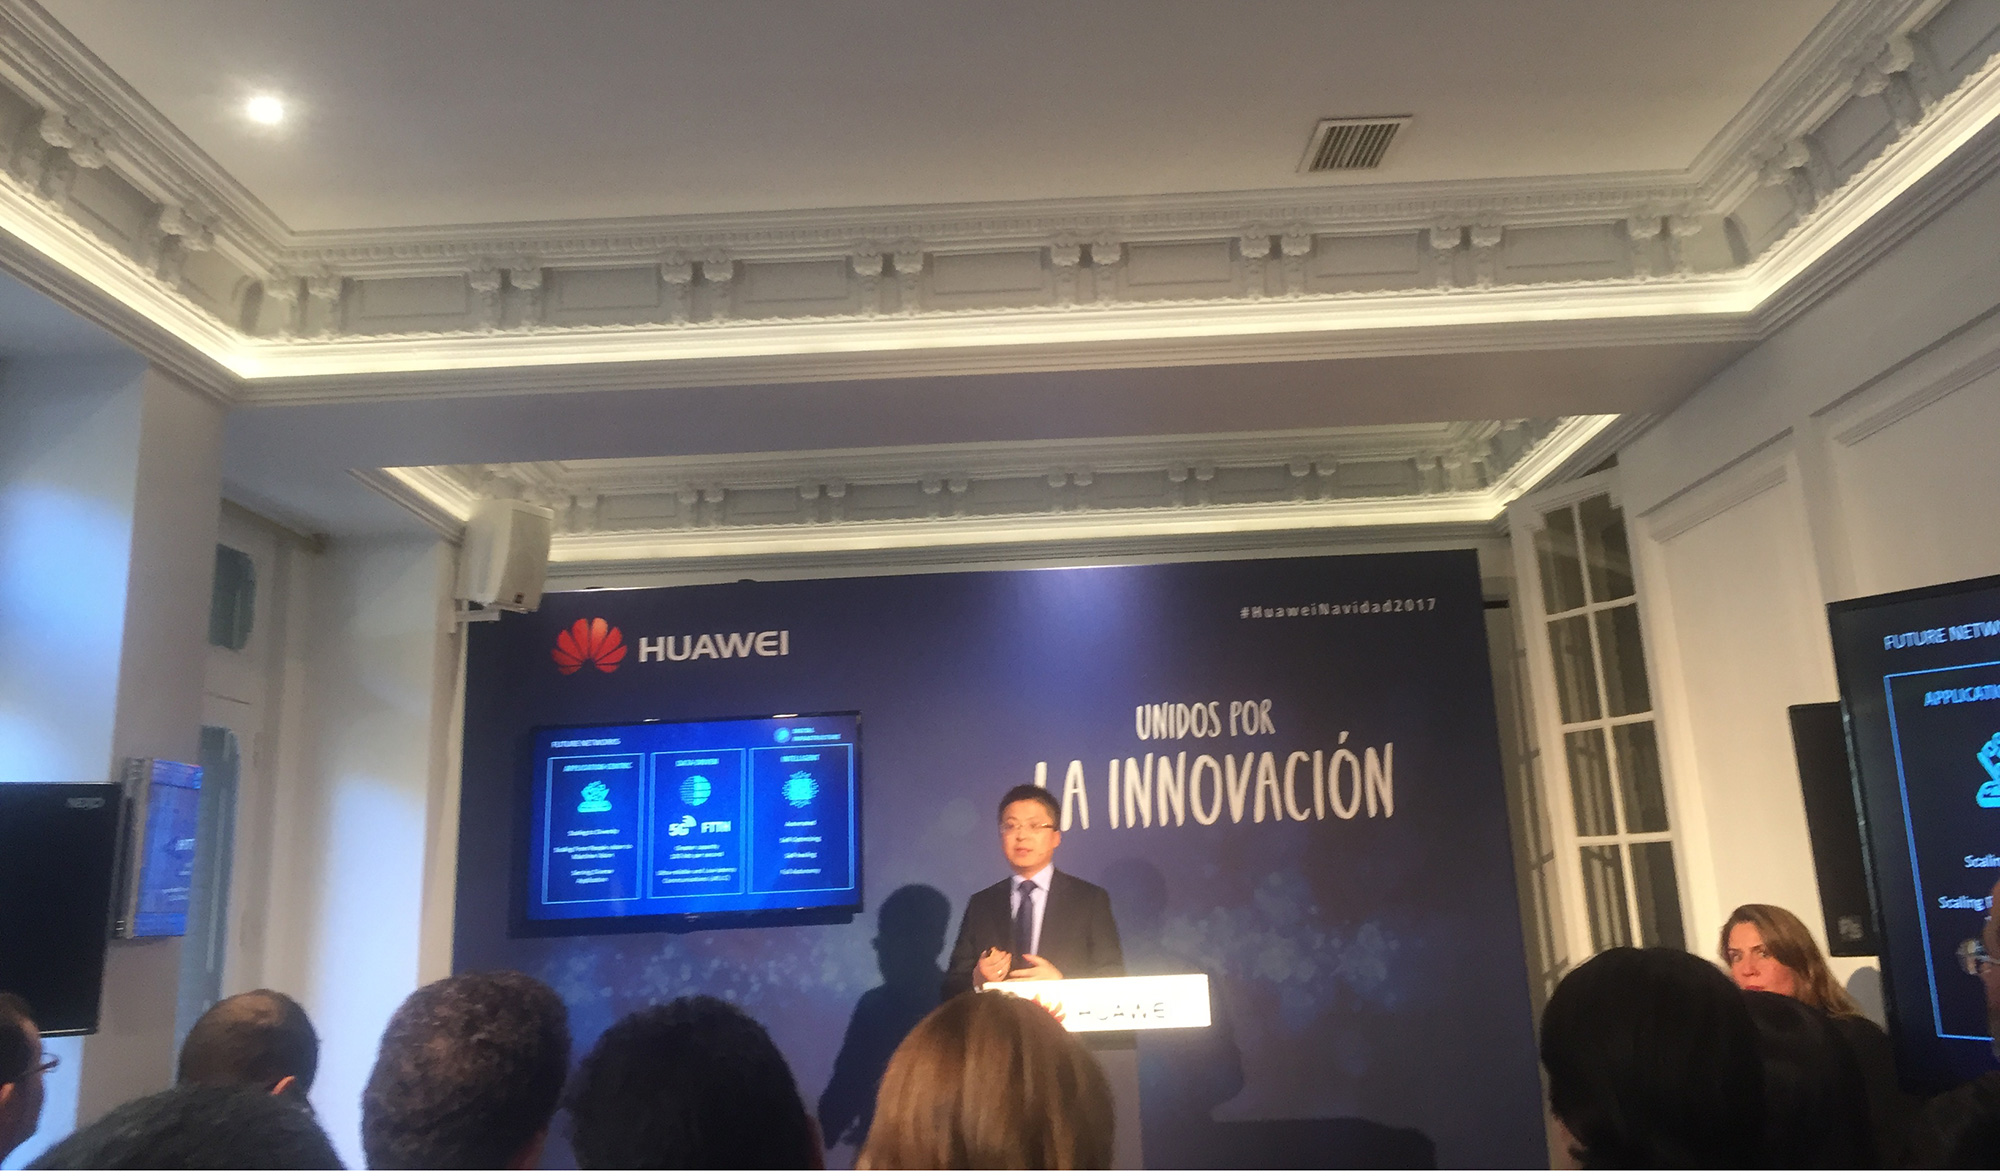 Huawei pretende centrarse en impulsar las tecnologas inalmbricas, especialmente el 5G, as como el desarrollo del Internet de las Cosas...